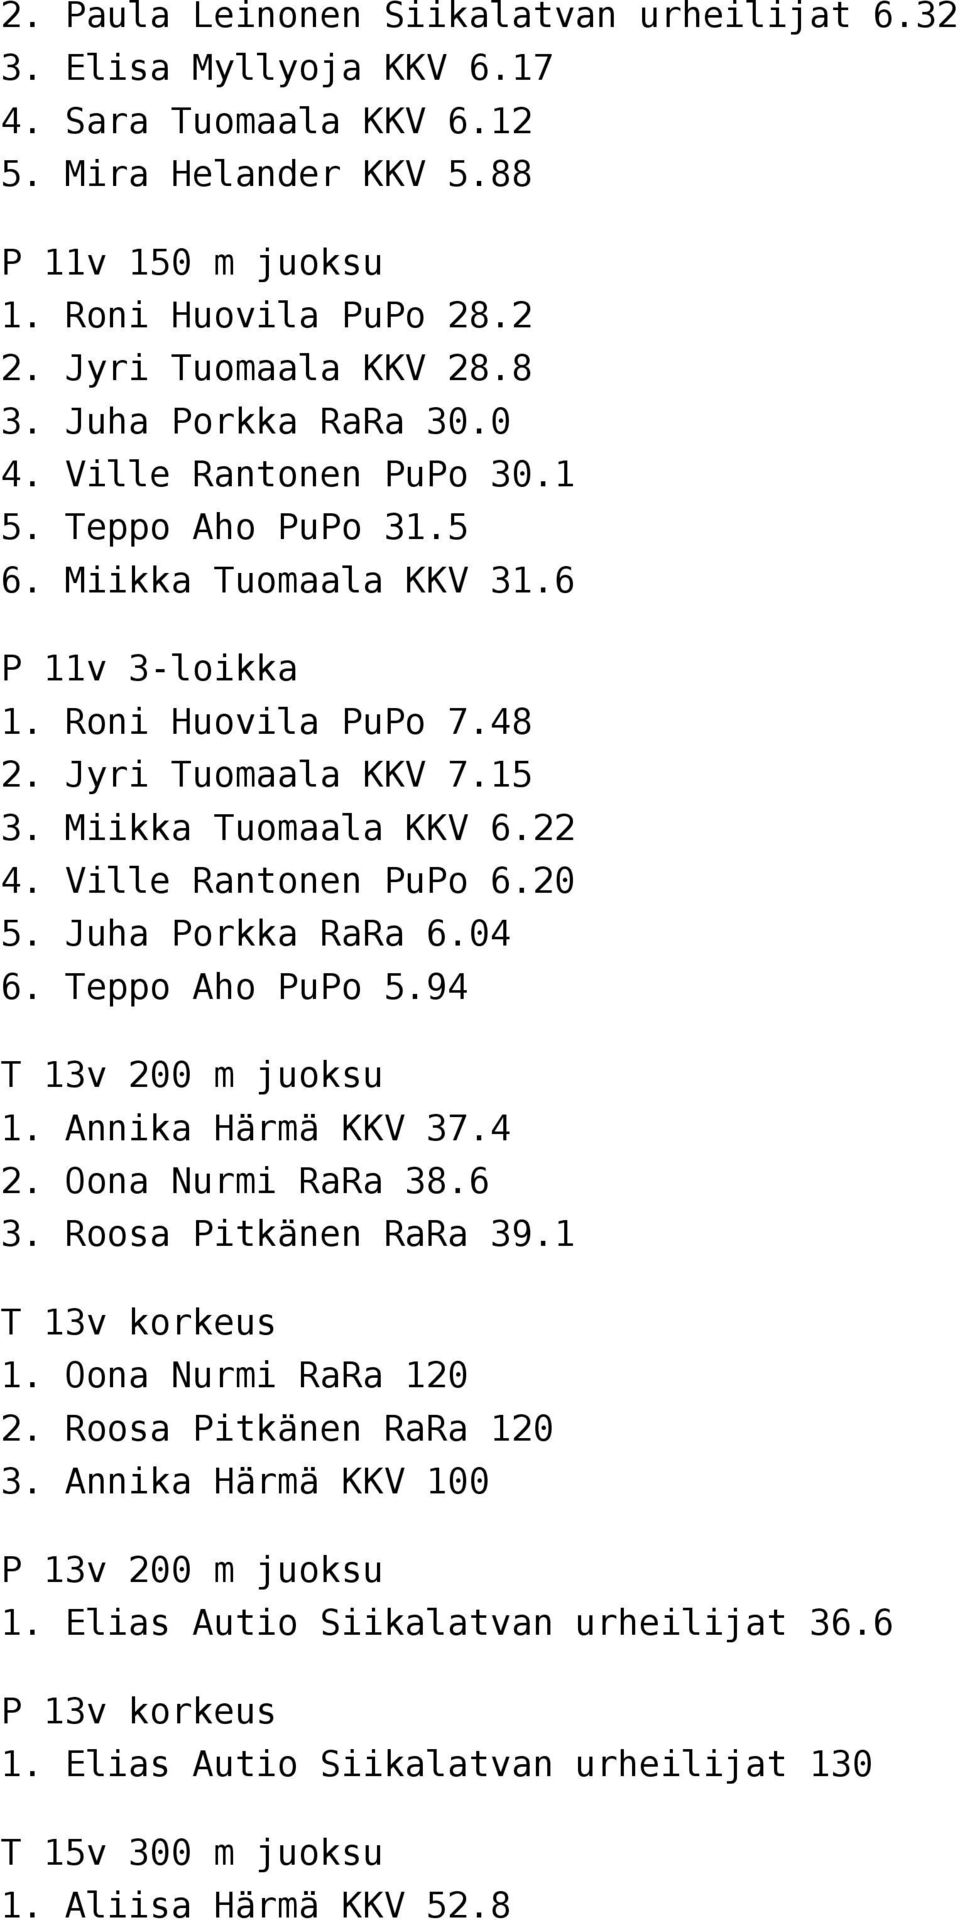 Ville Rantonen PuPo 6.20 5. Juha Porkka RaRa 6.04 6. Teppo Aho PuPo 5.94 T 13v 200 m juoksu 1. Annika Härmä KKV 37.4 2. Oona Nurmi RaRa 38.6 3. Roosa Pitkänen RaRa 39.1 T 13v korkeus 1.